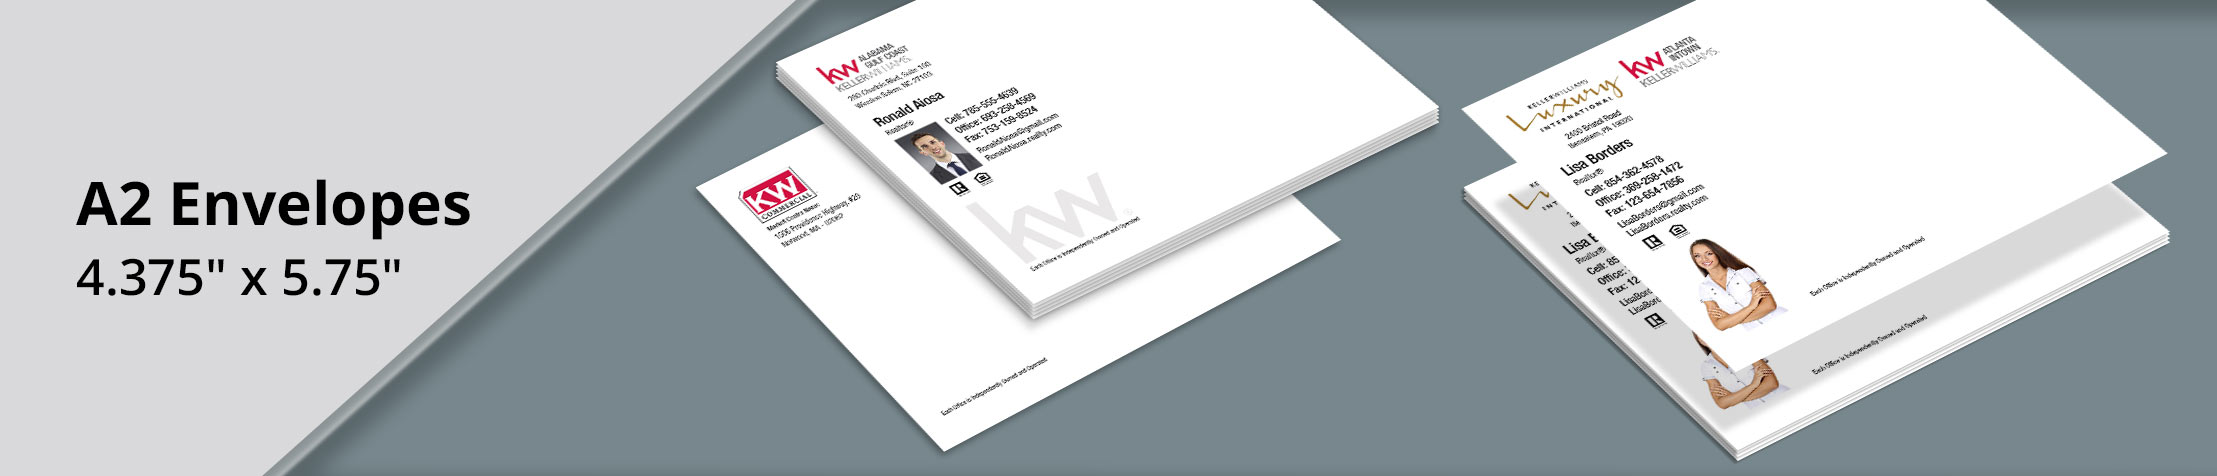 Keller Williams Real Estate A2 Envelopes - KW Approved Vendor custom stationery, A2 Standard envelopes for Realtors | BestPrintBuy.com